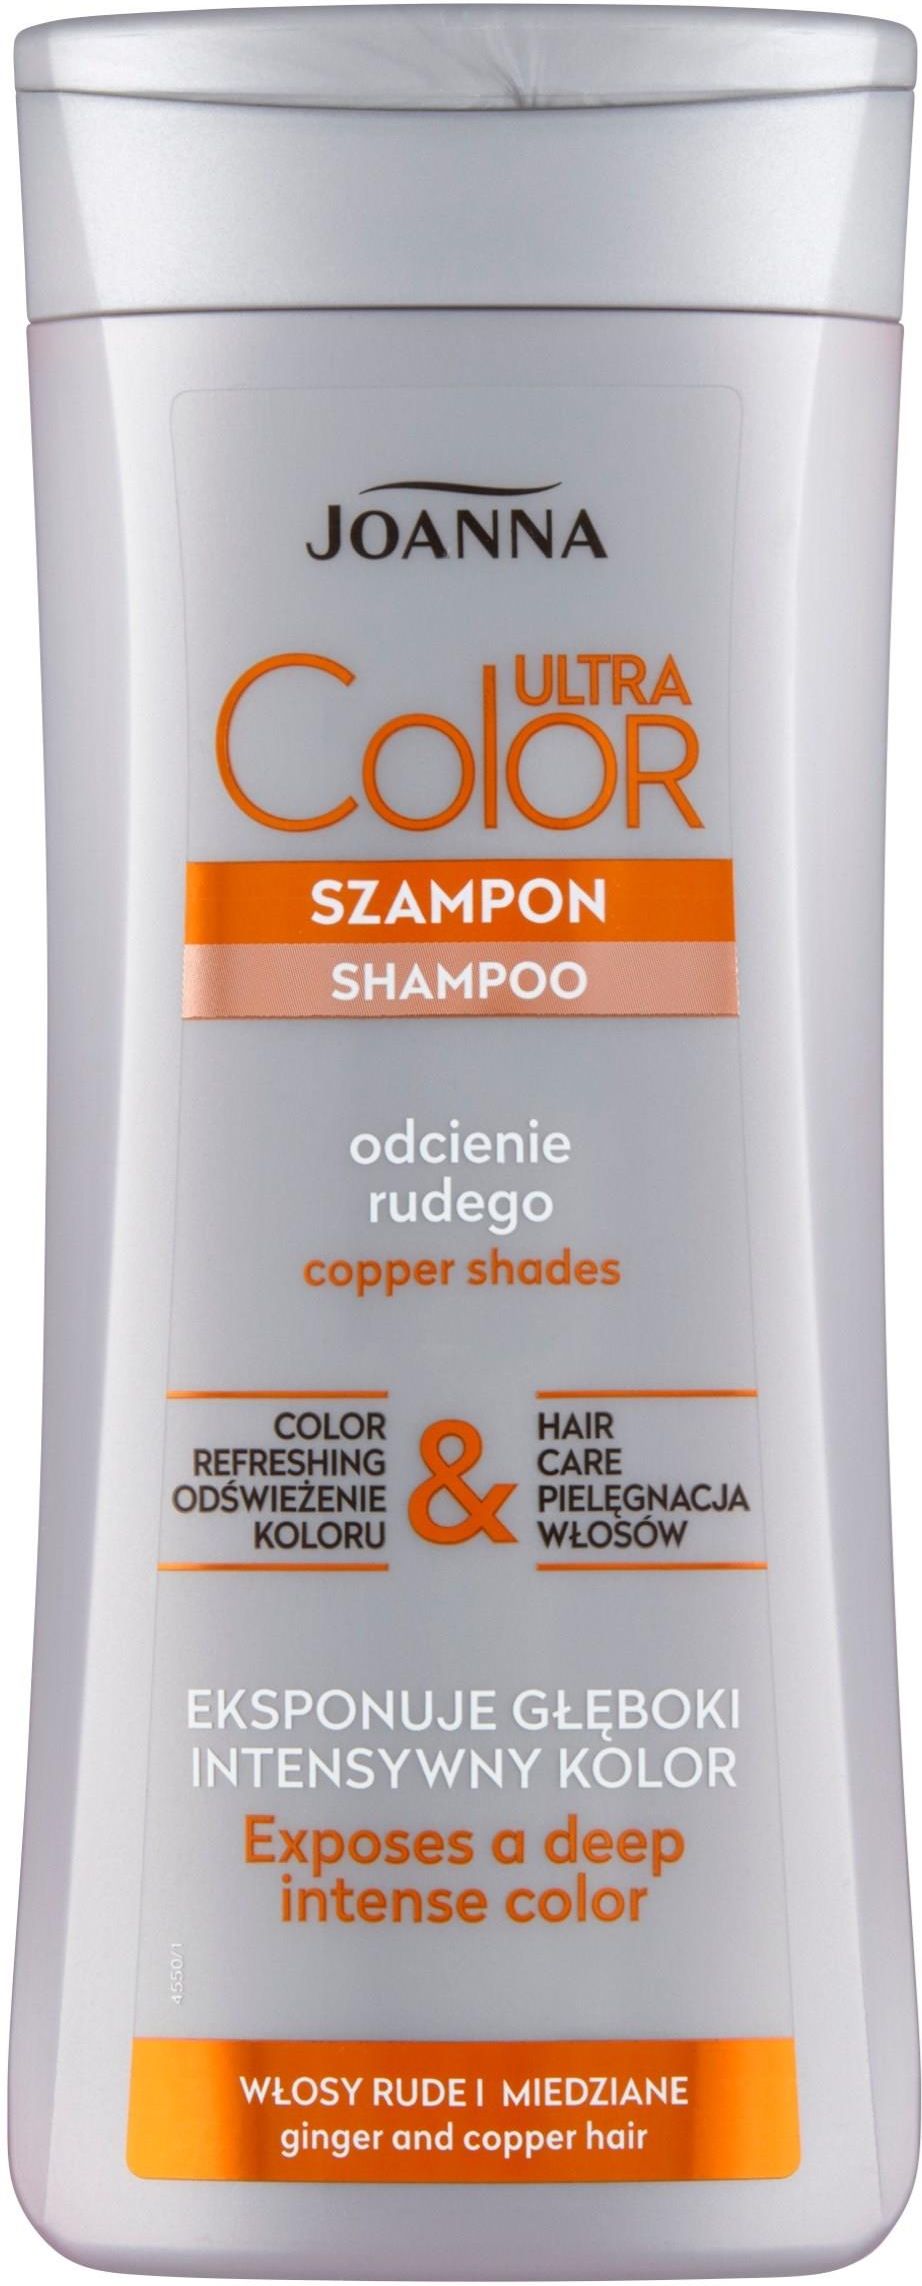 szampon joanna do włosów rudych opinie